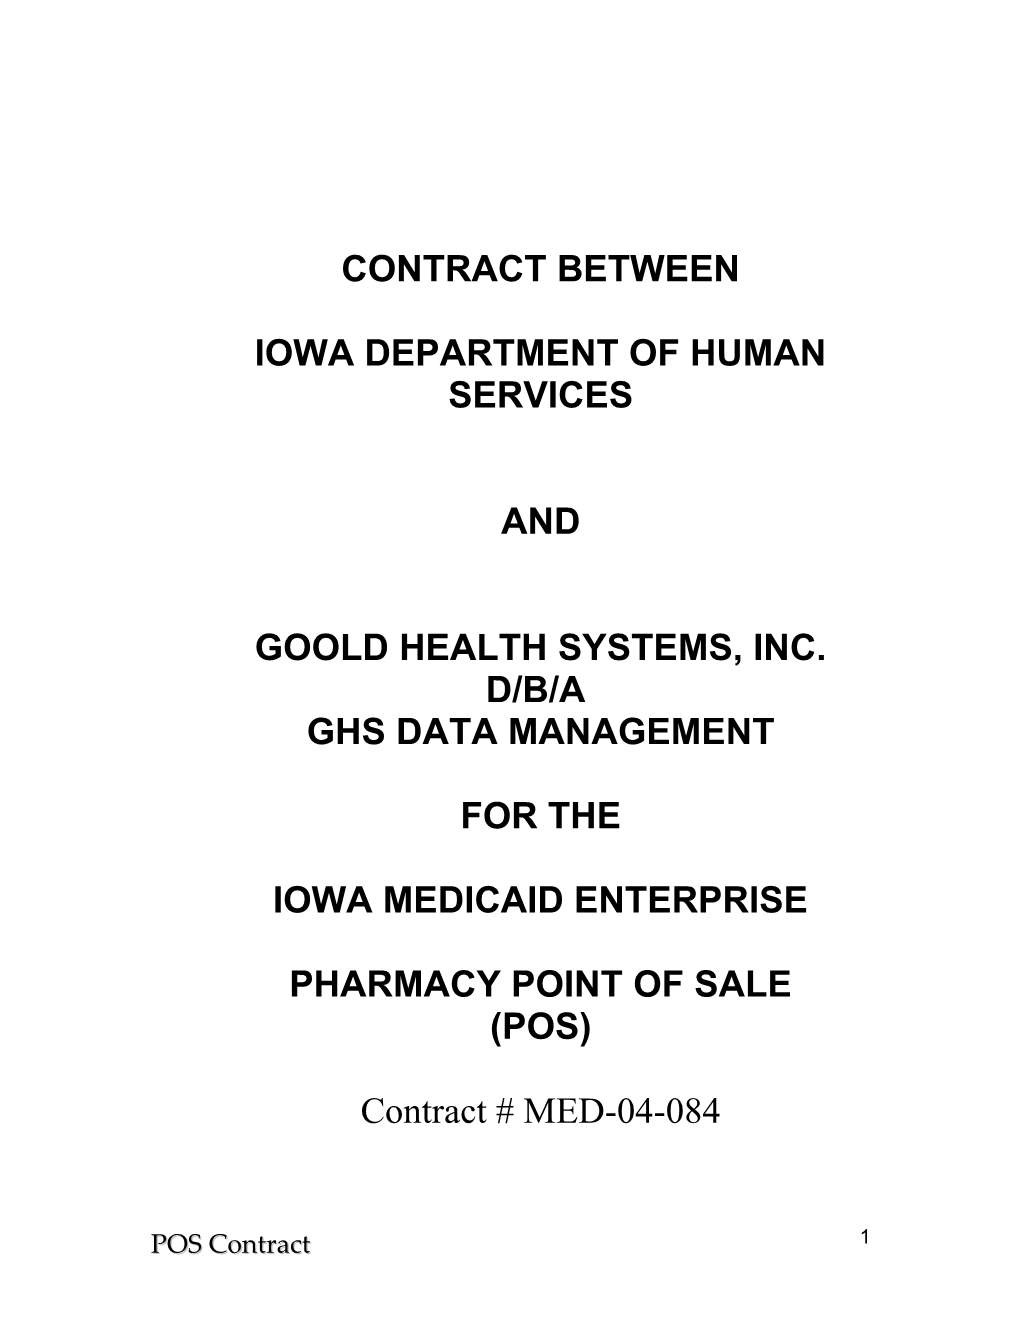 Goold Health Systems, Inc